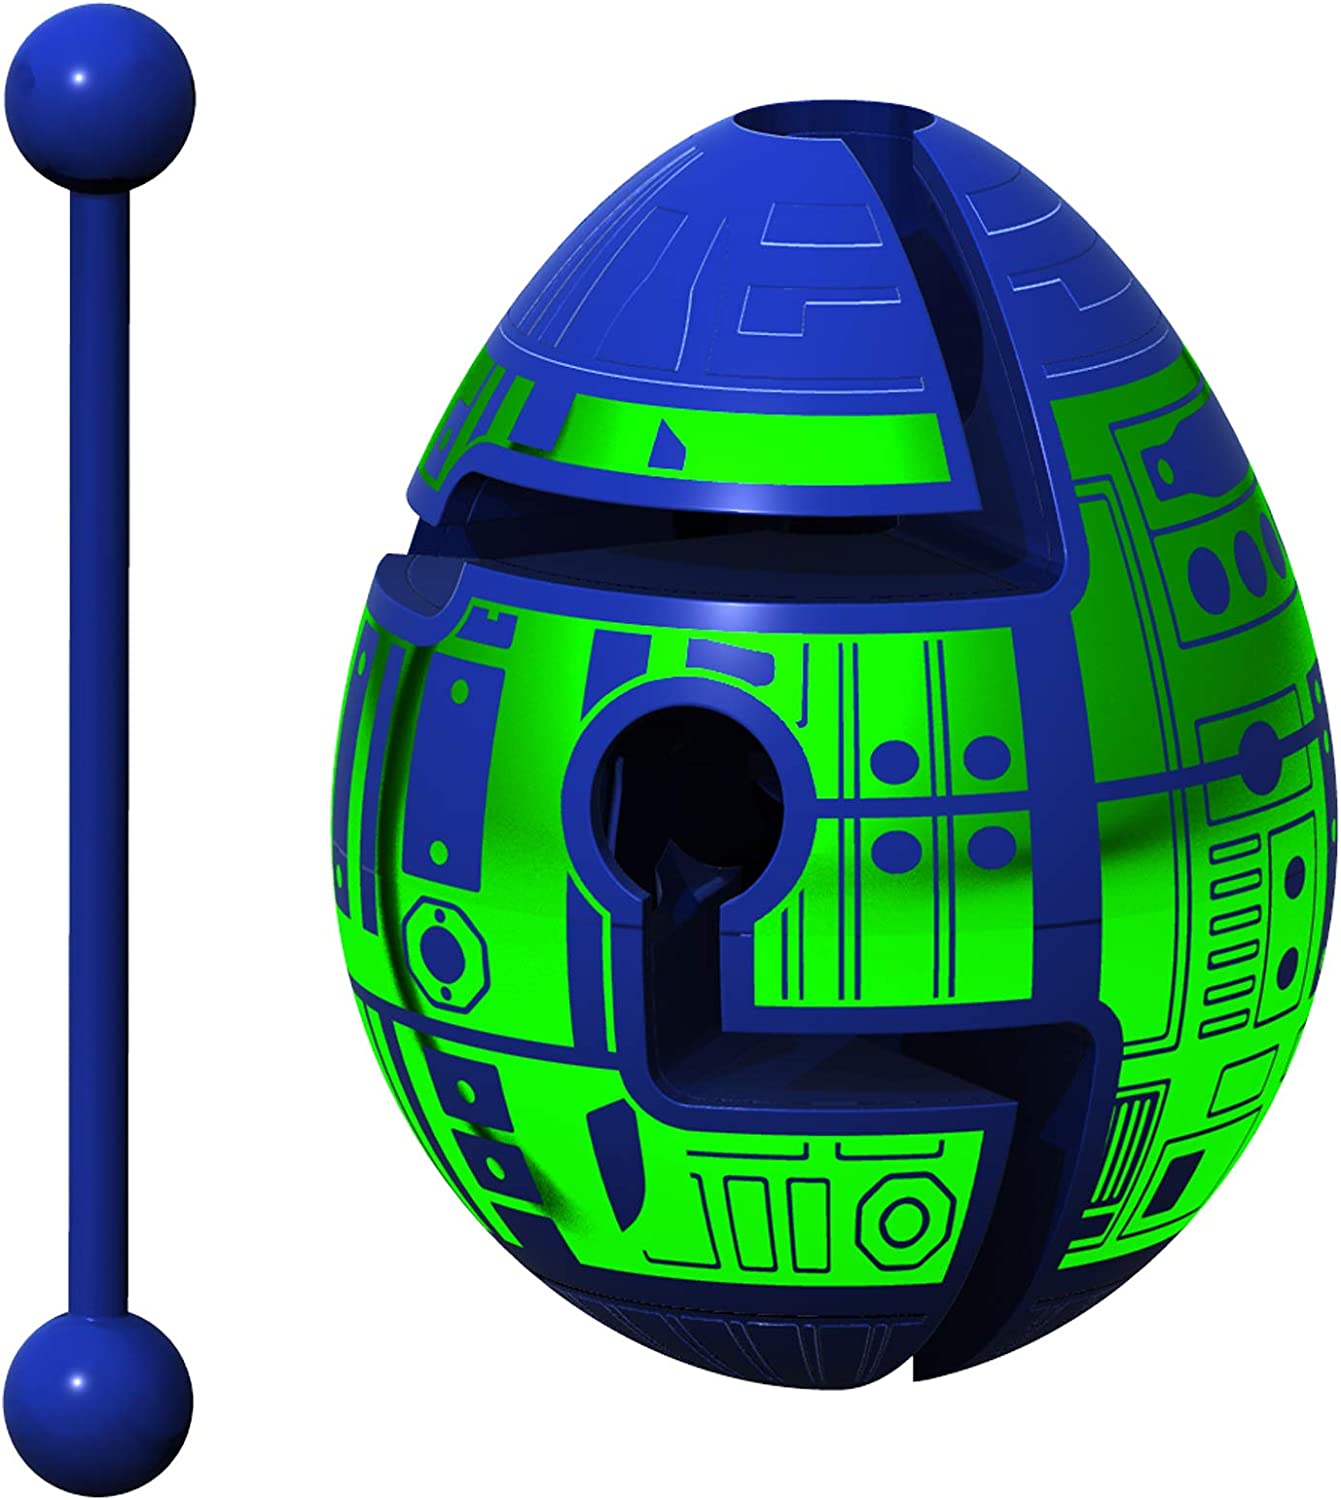 Puzzle en 3D - Robo - Smart Egg